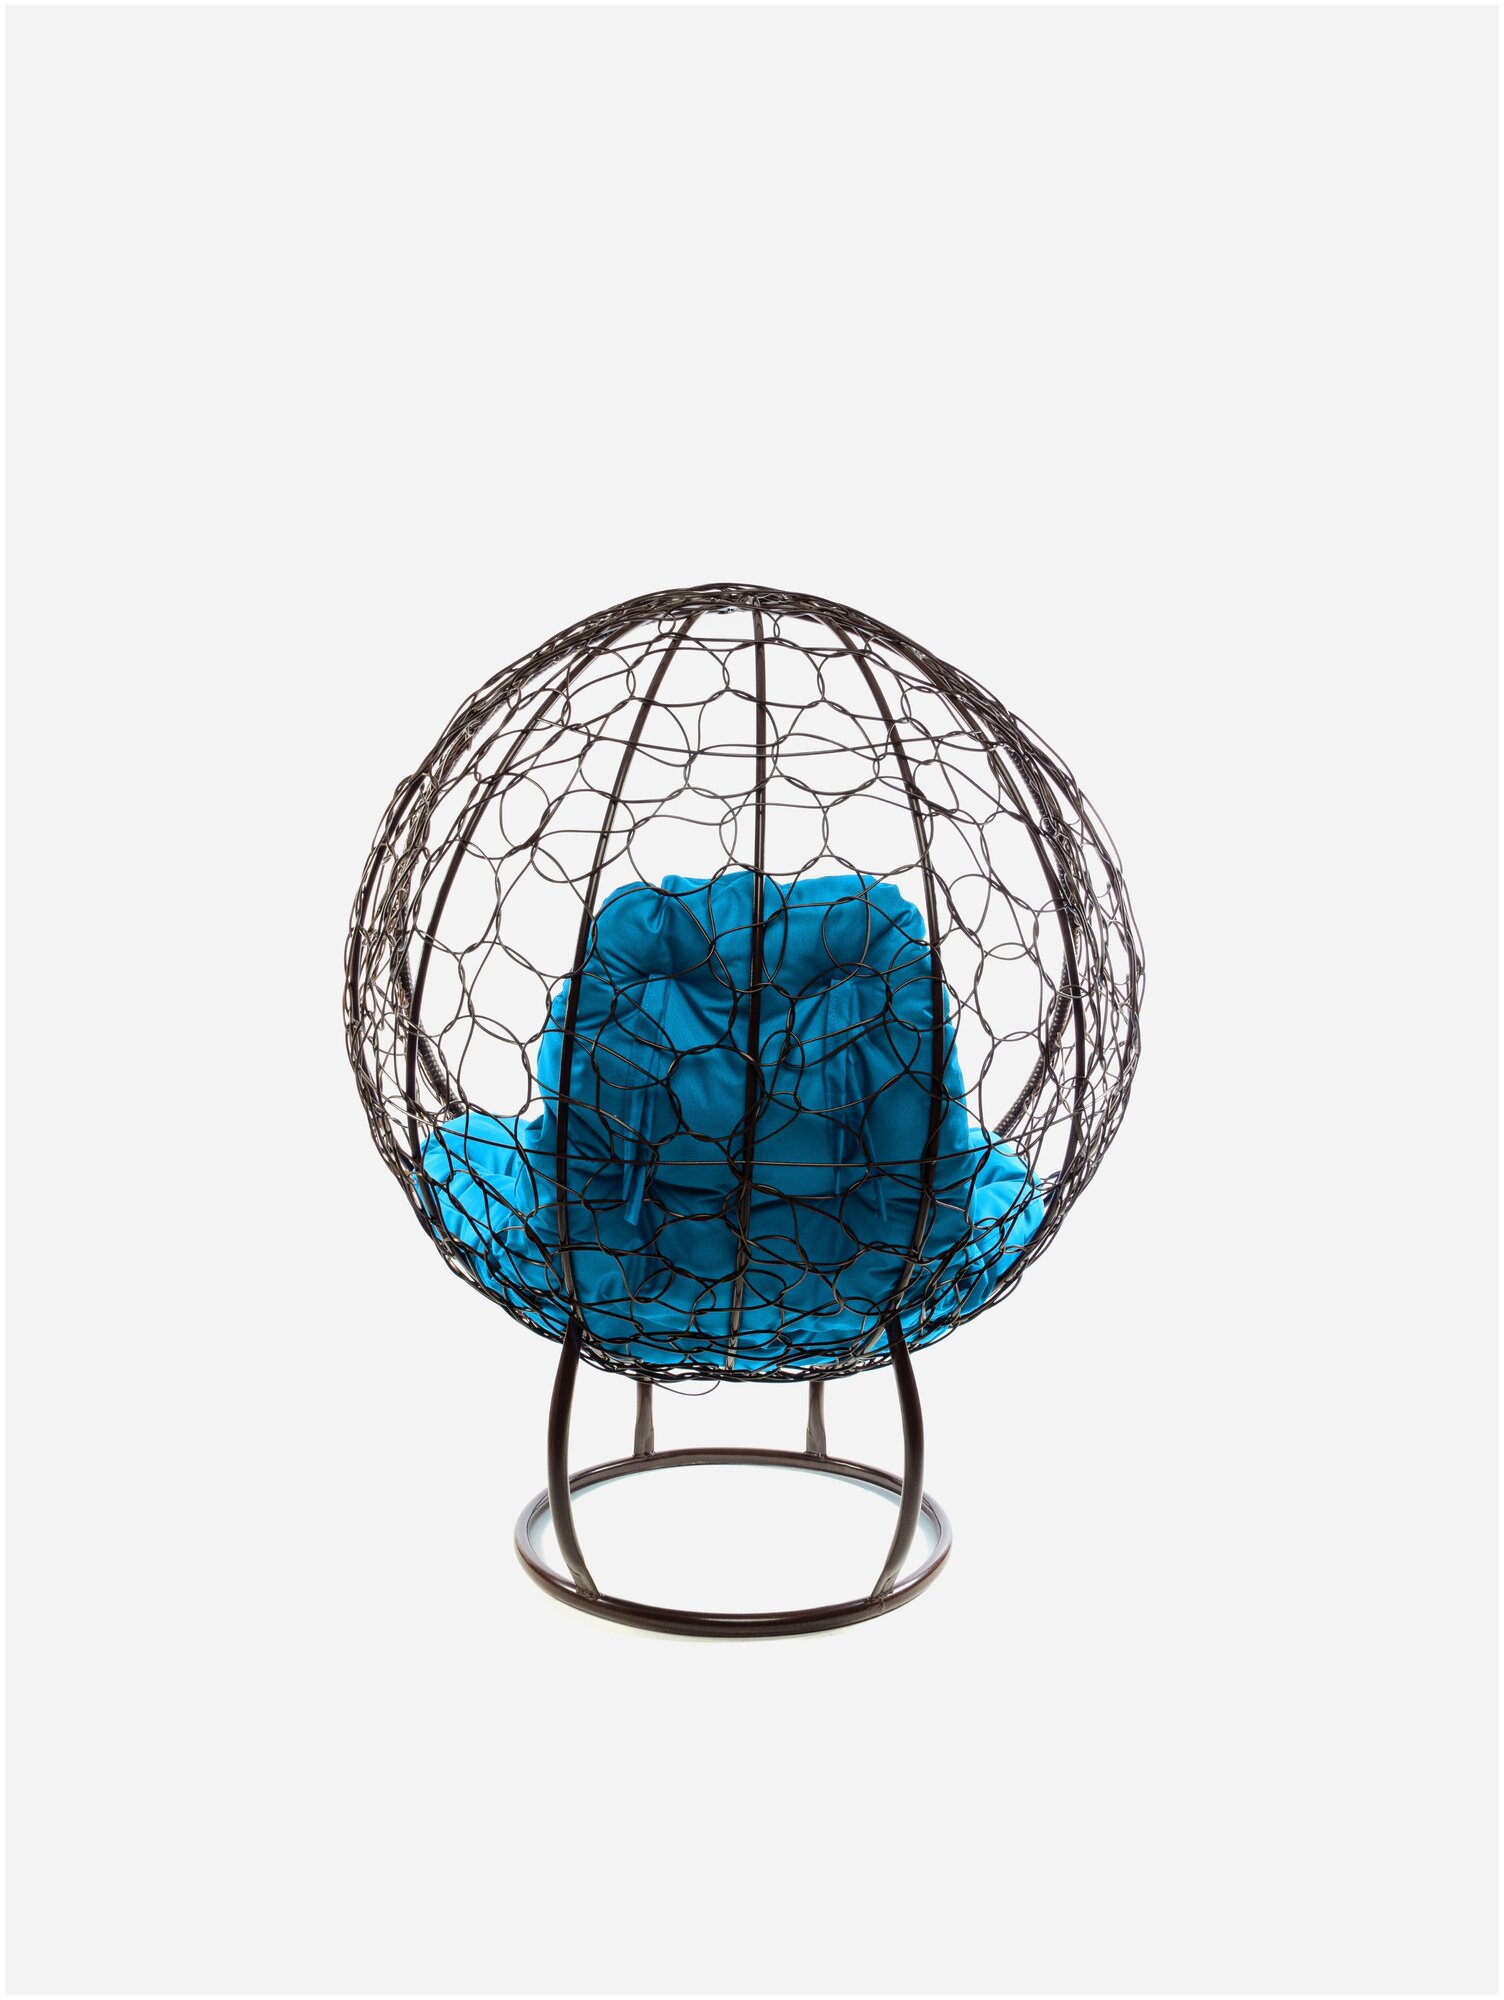 Кресло m-group круг на подставке ротанг коричневое, голубая подушка - фотография № 3